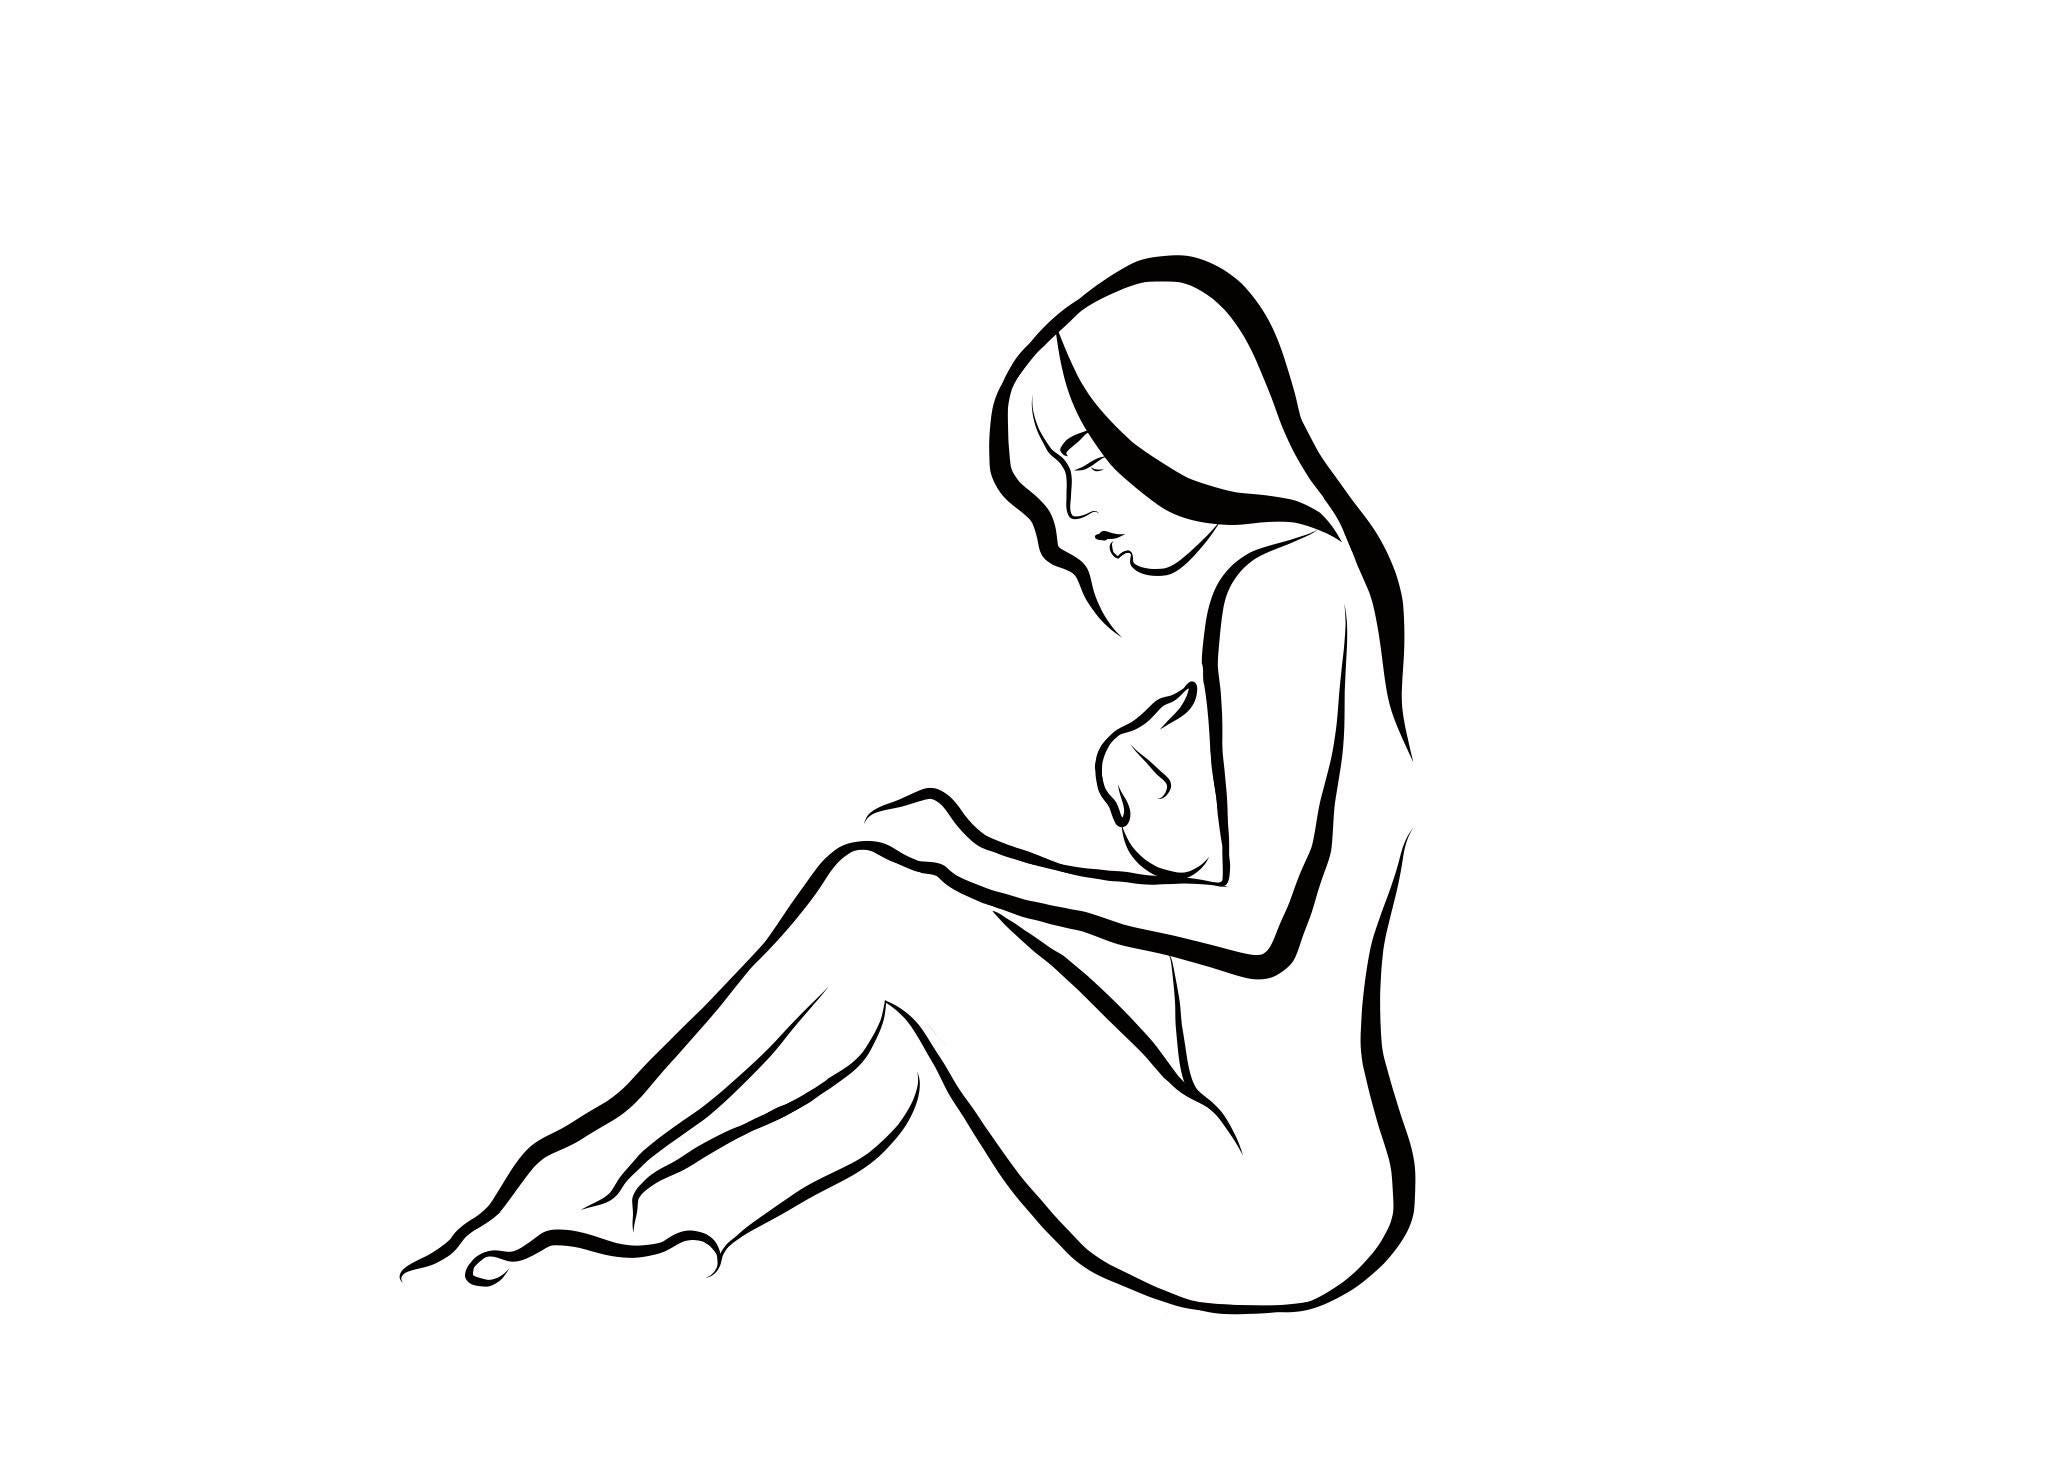 Haiku #21 - Digital Vector Drawing Seated Female Nude Woman Figure Cover Breast - Art by Michael Binkley